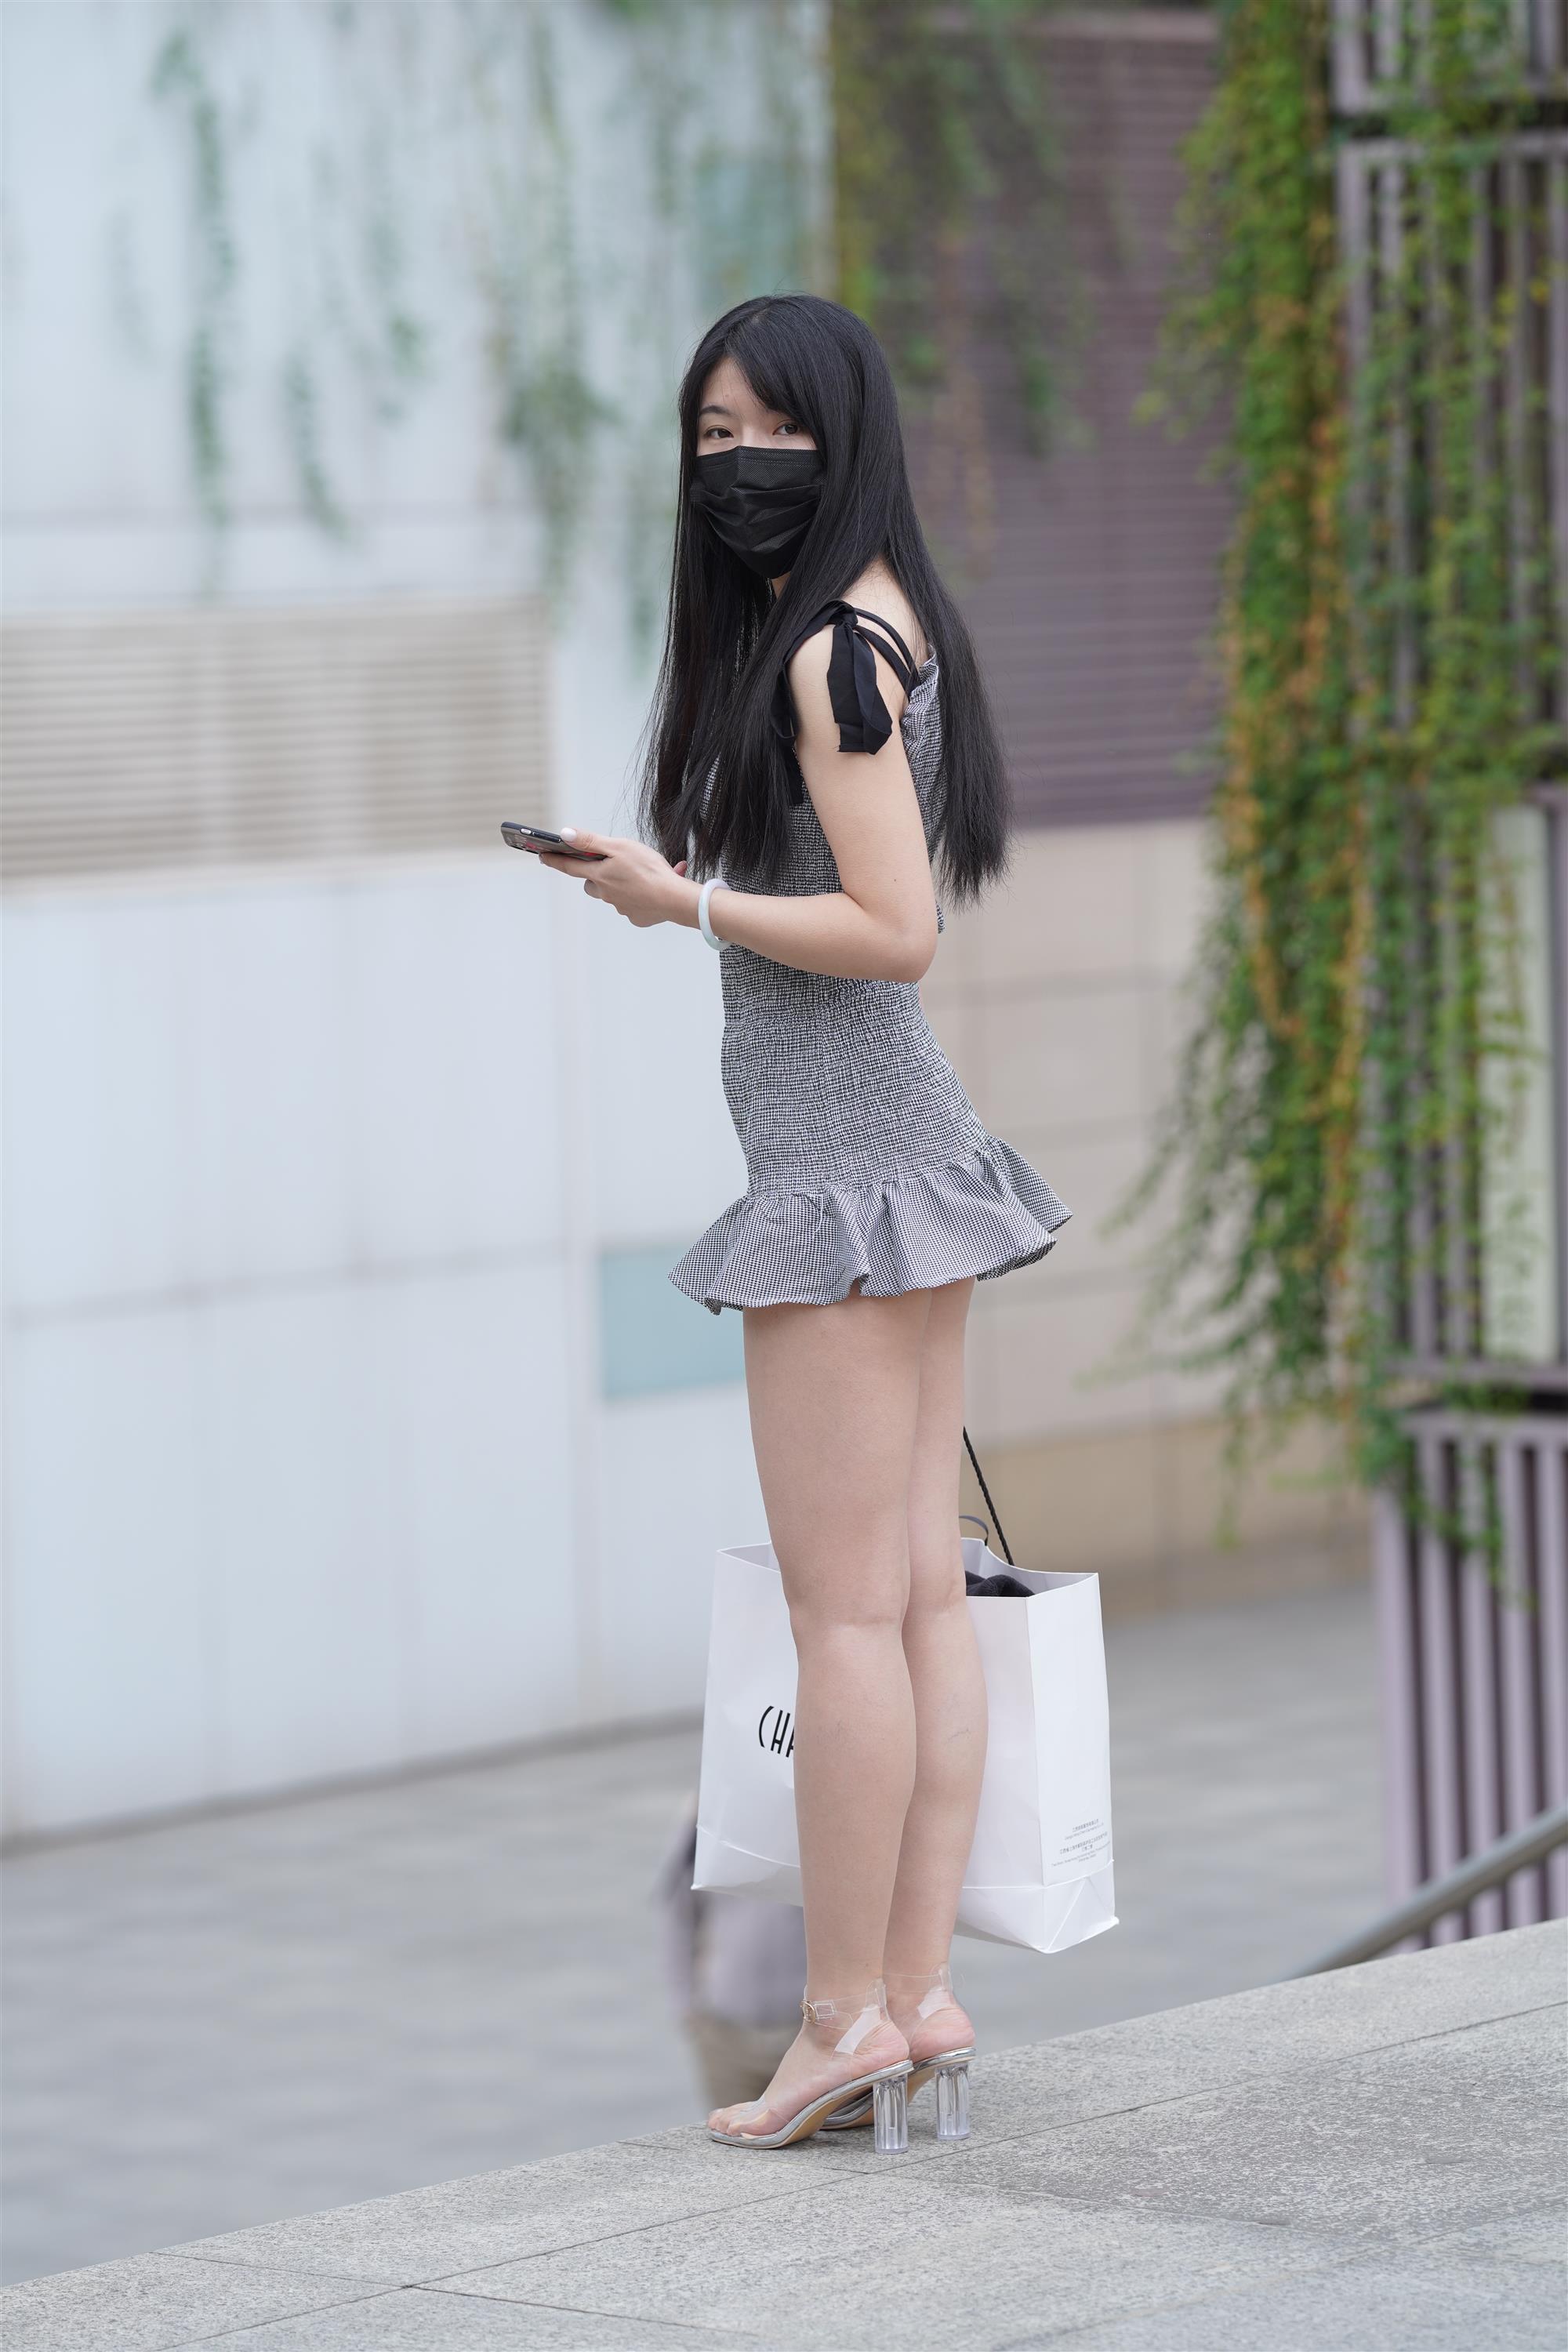 Street Girl In Short Skirt - 227.jpg